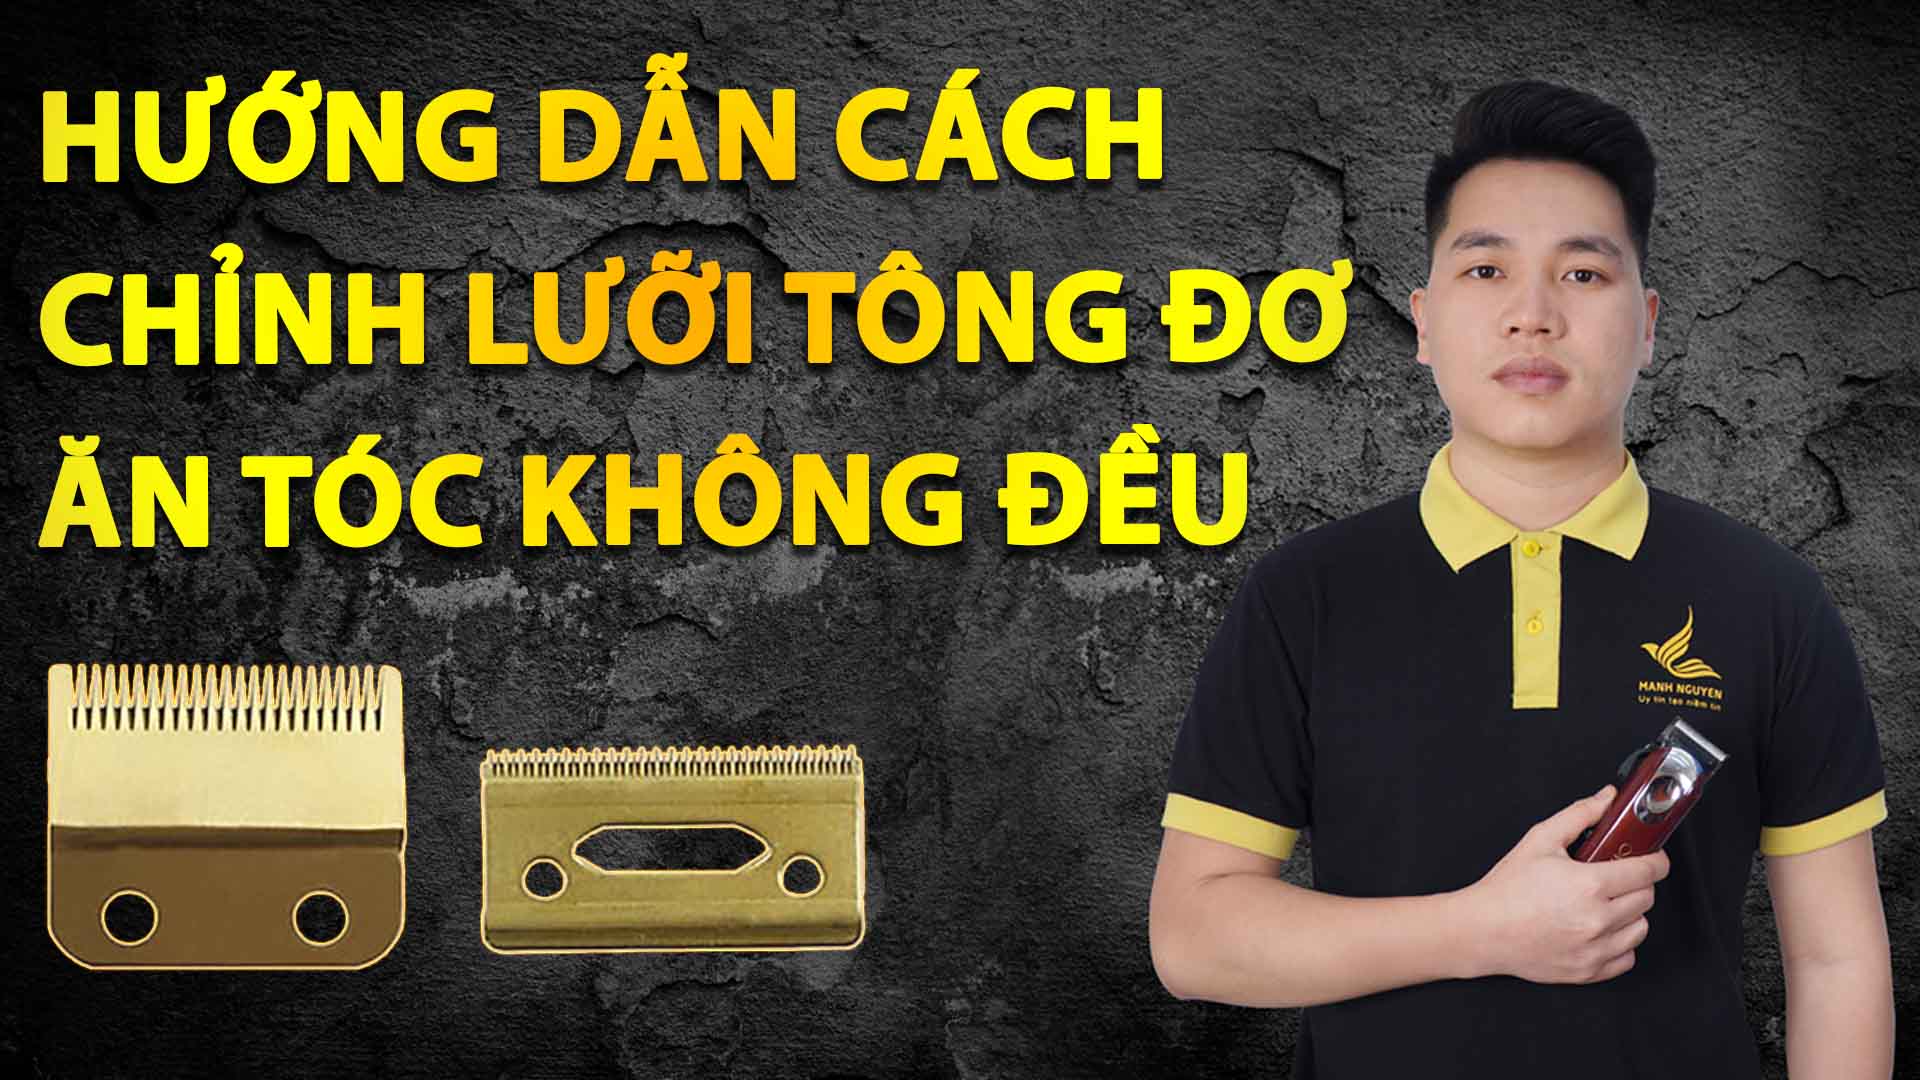 huong dan cach chinh luoi tong do an toc khong deu